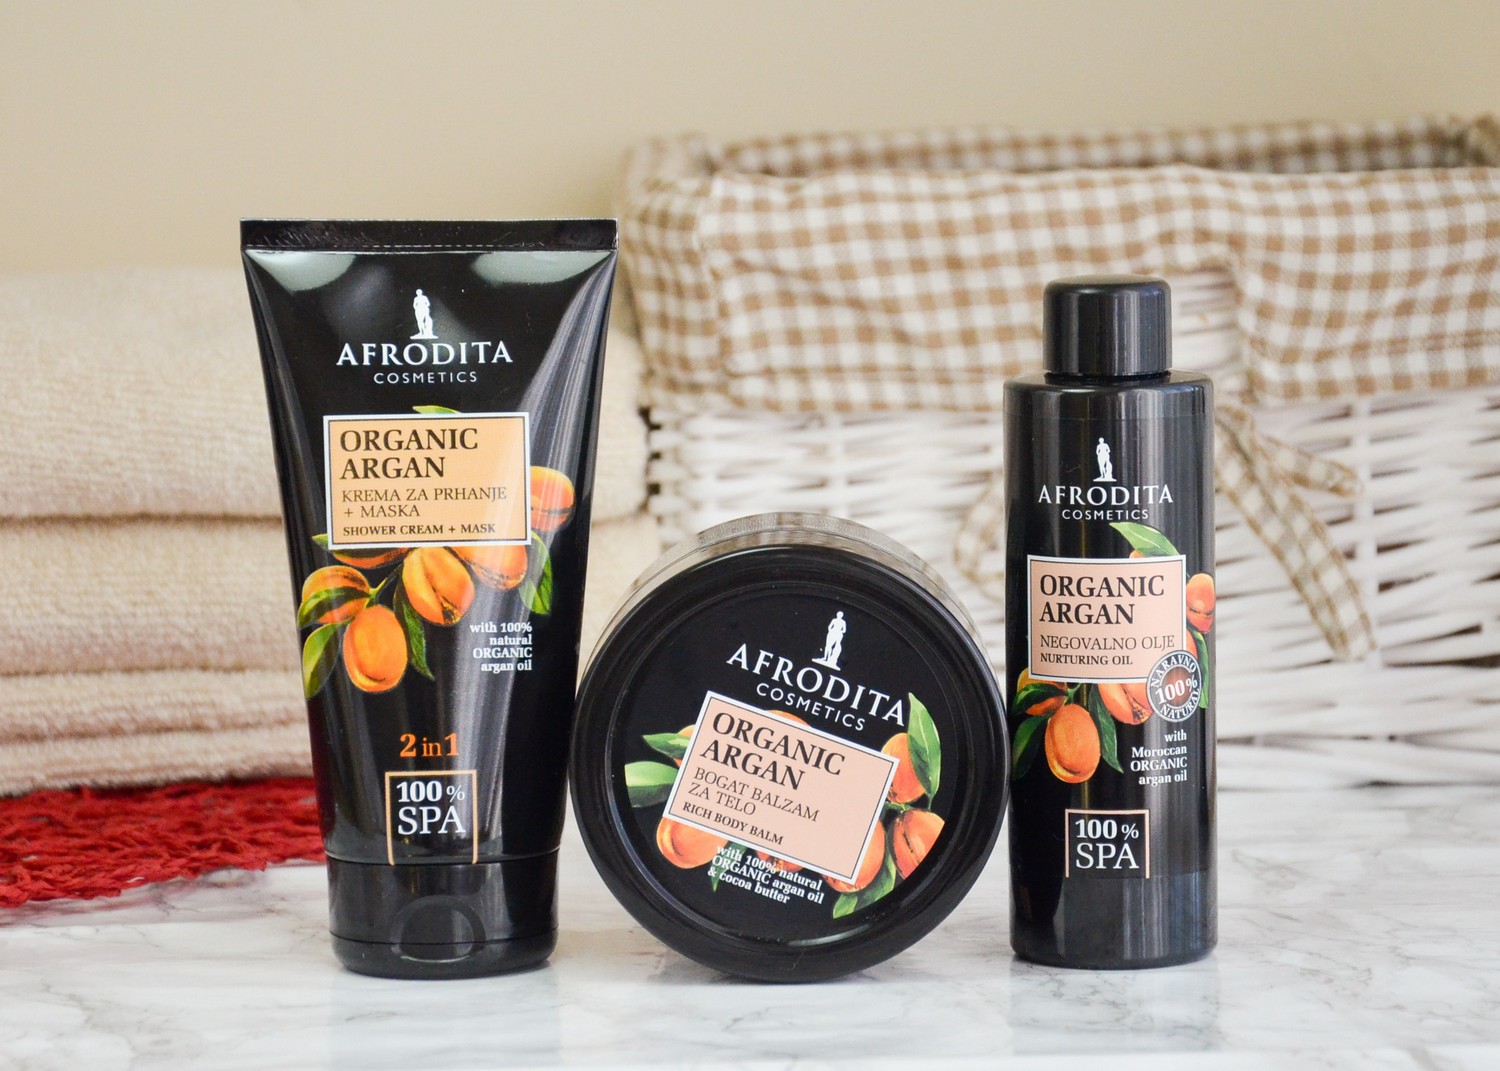 Afrodita 100% Spa Organic Argan Skincare